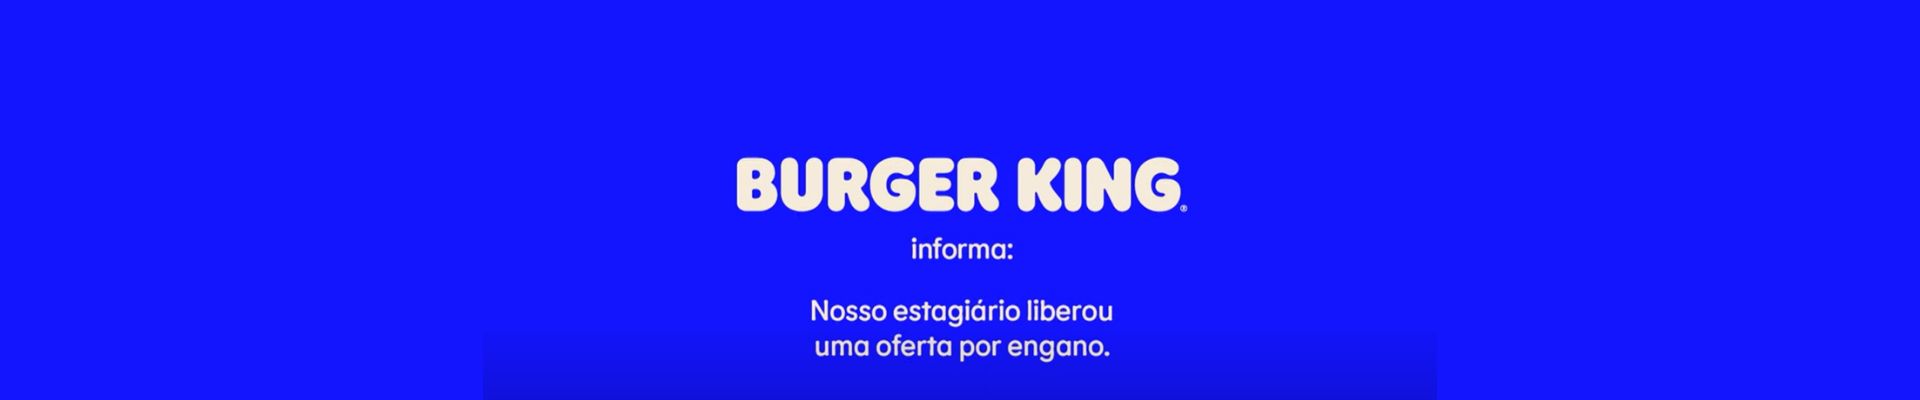 Burger King apresenta nova campanha e libera ofertas por “engano”